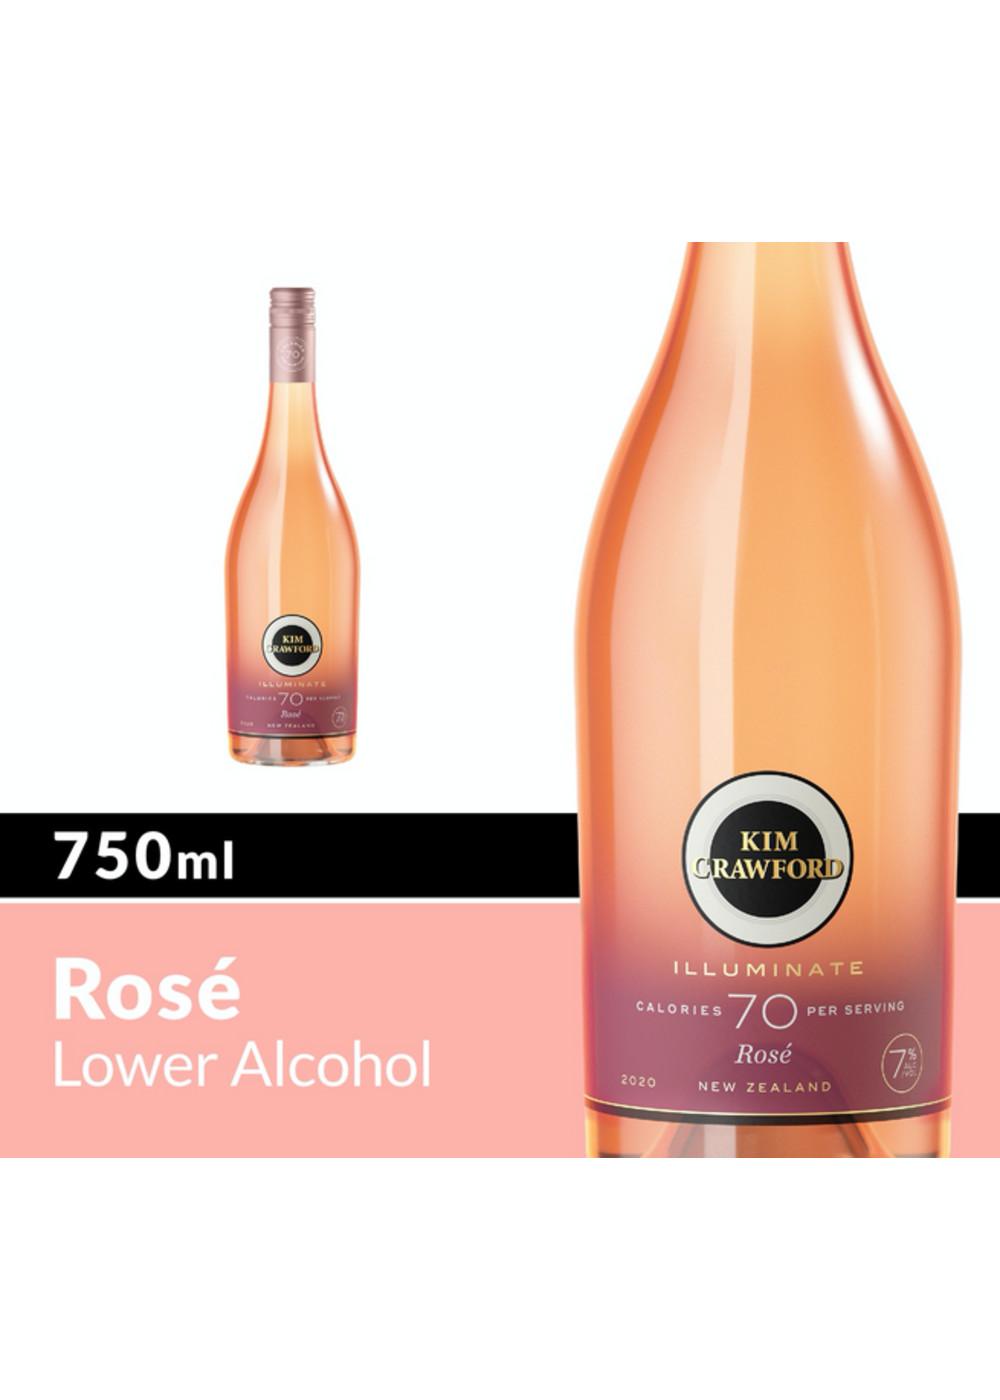 Kim Crawford Illuminate Rose Wine Bottle; image 3 of 10